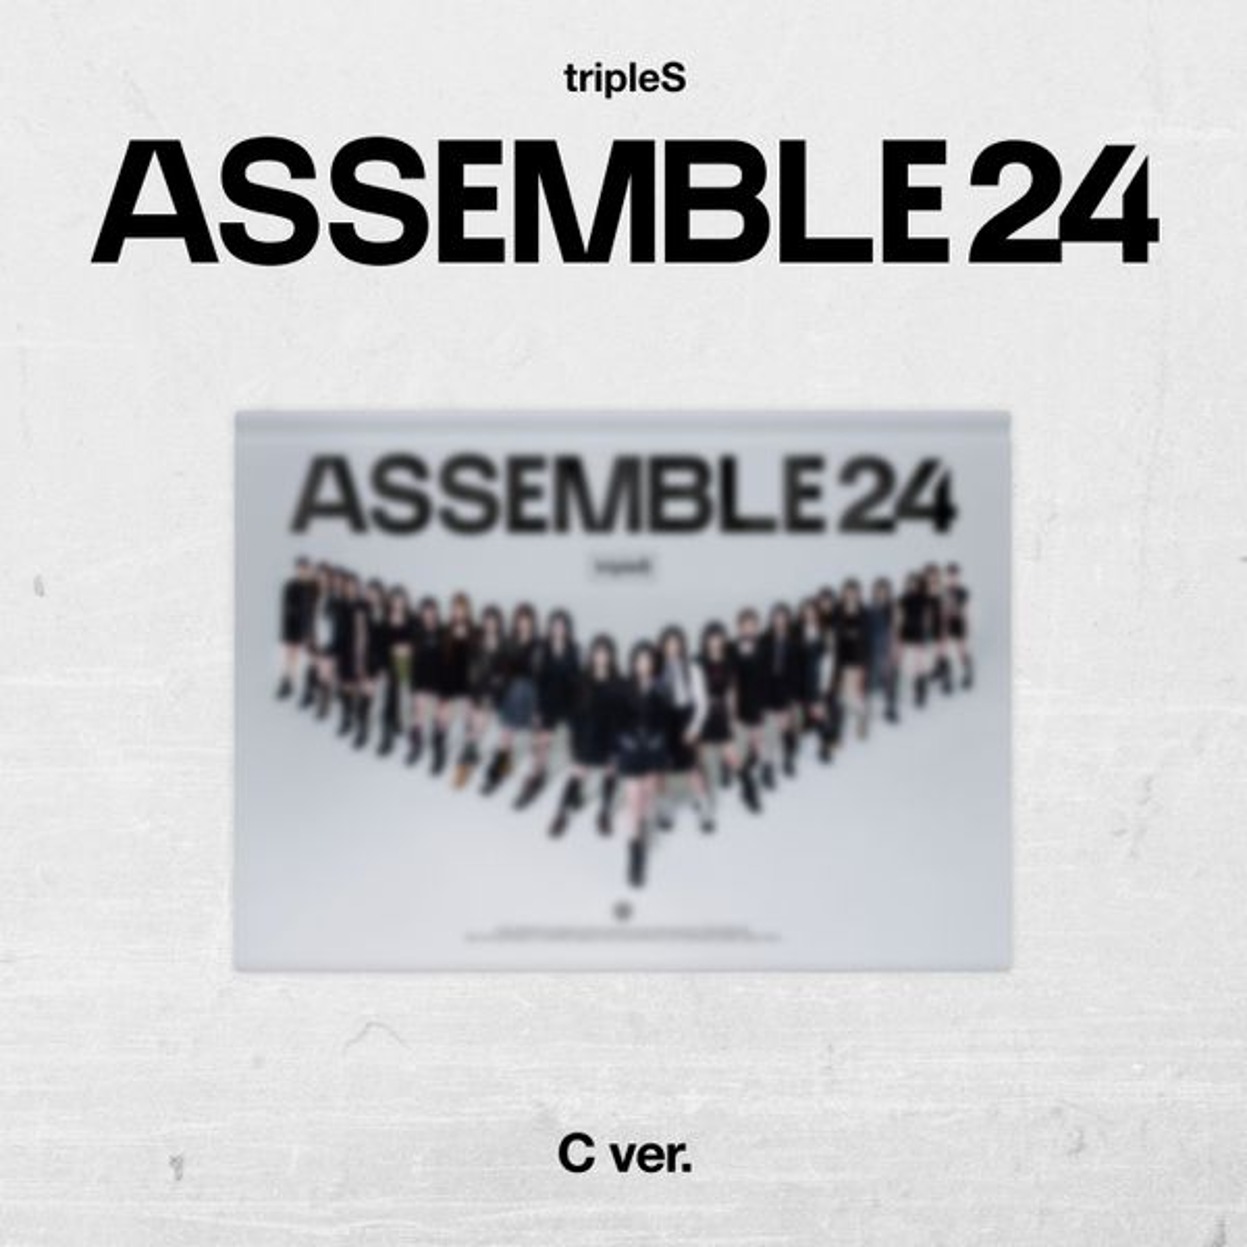 トリプルエス (tripleS) - 正規アルバム 1集 [ASSEMBLE24] B Ver.